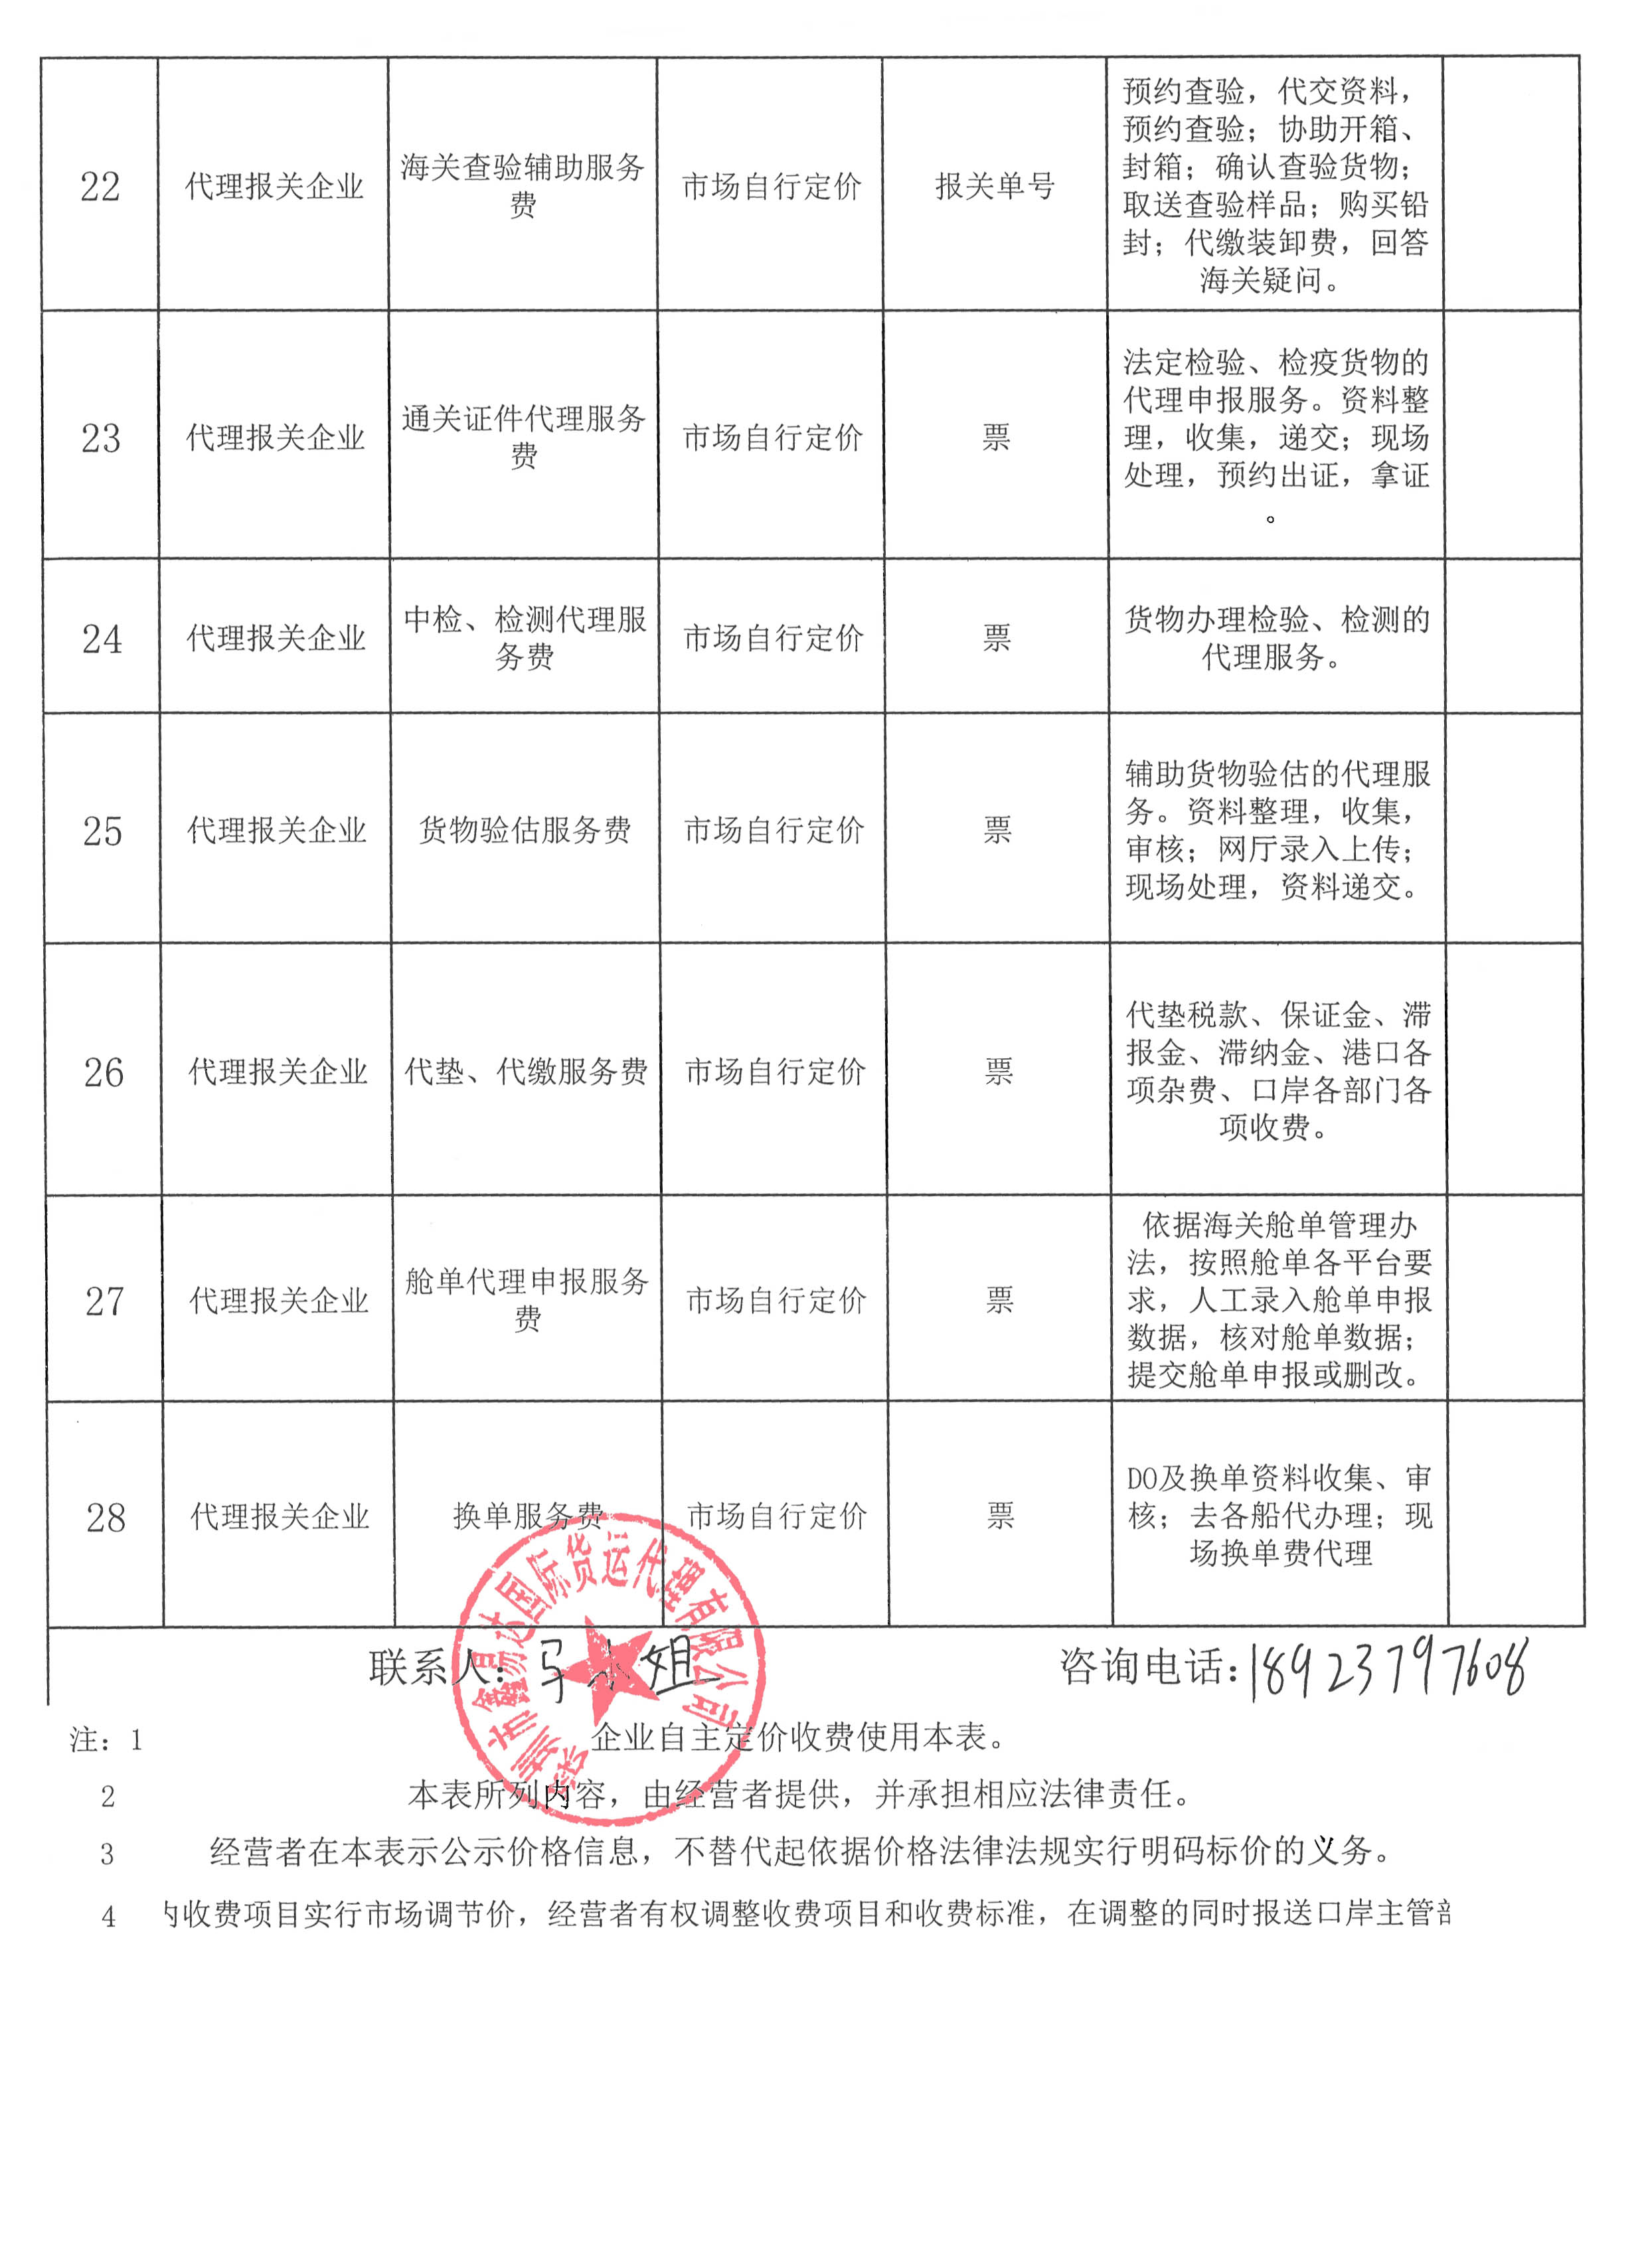 深圳市鑫易达国际货运代理有限公司收费目录清单_4.jpg